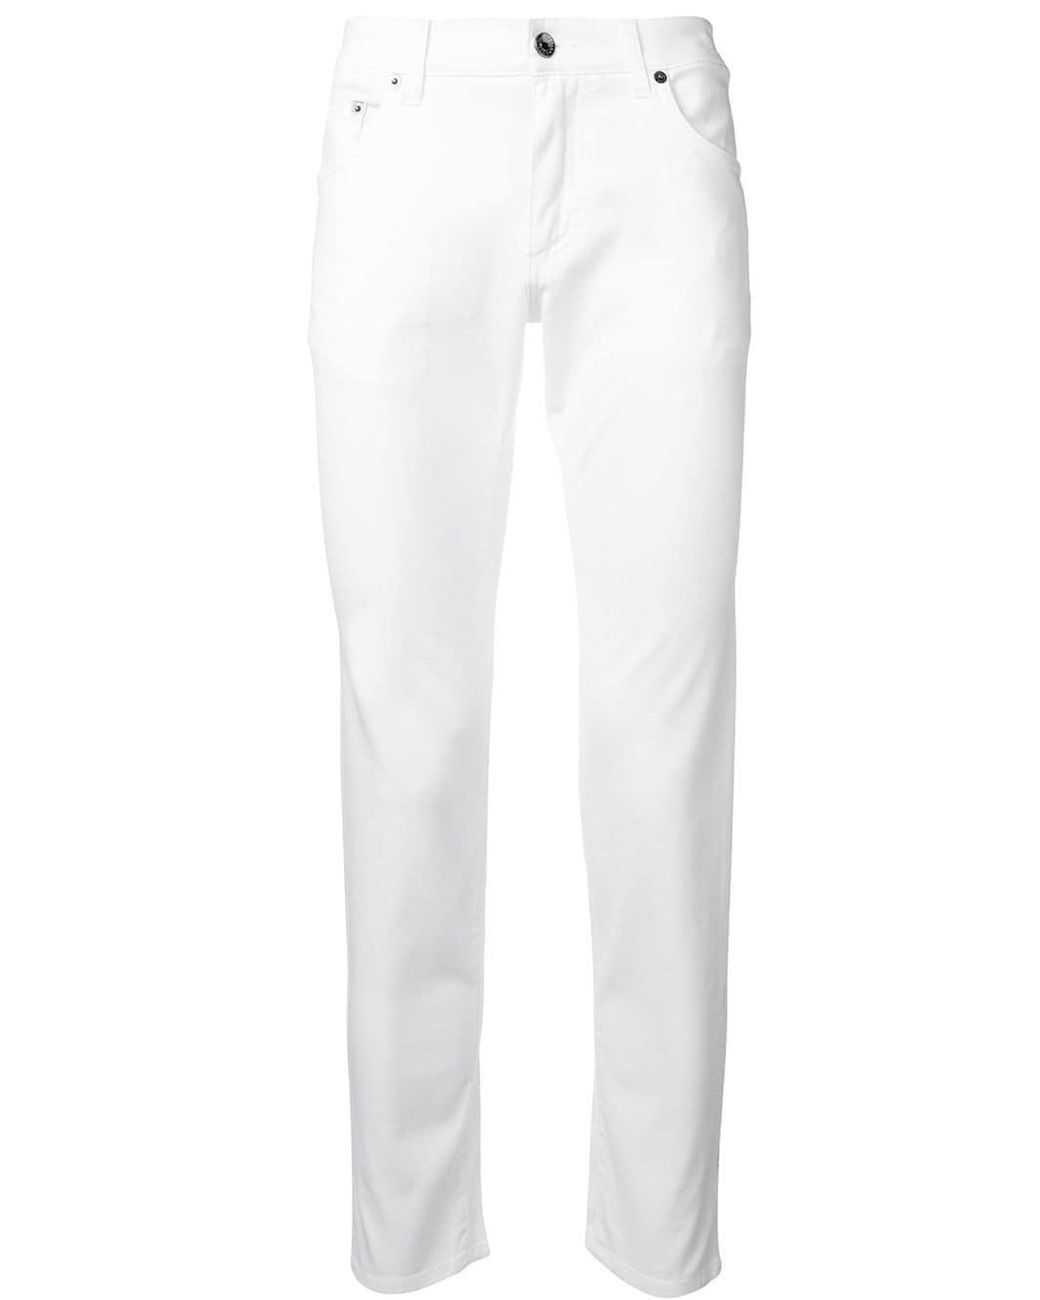 Dolce & Gabbana Denim Jeans in White for Men - Lyst